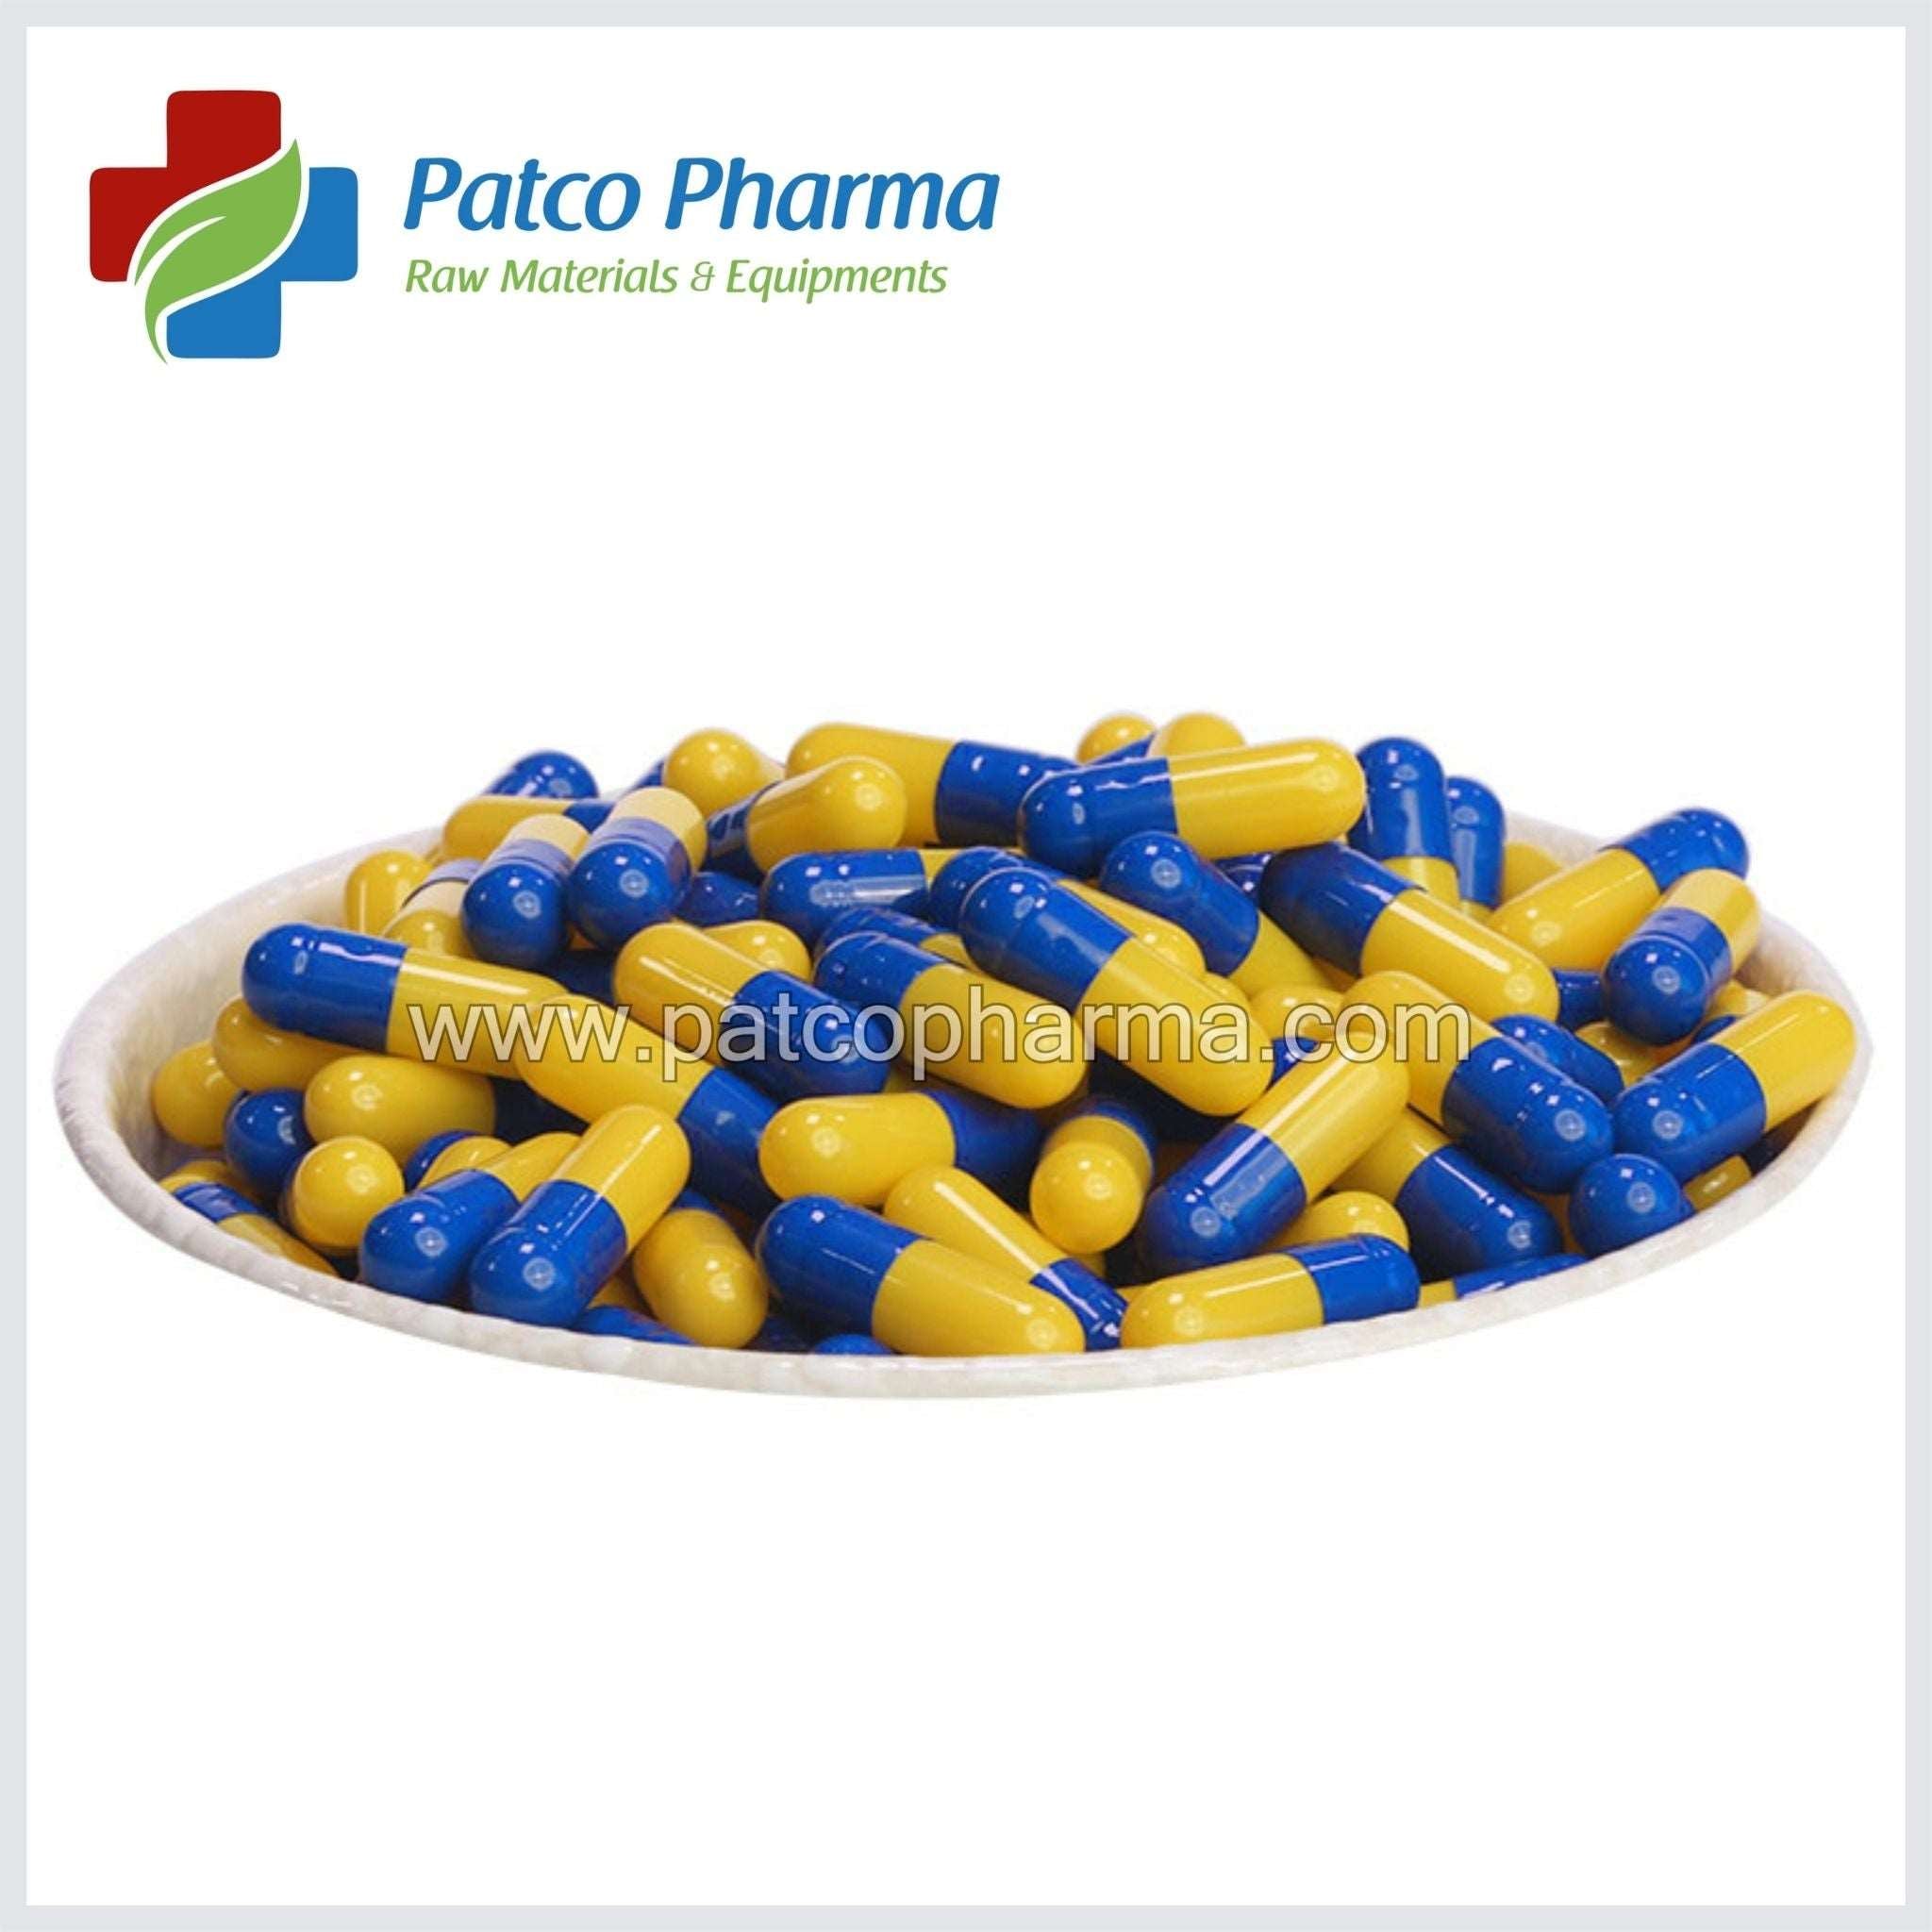 Empty Gelatin Capsule - Size 0, Patco Pharma, Gelatin Capsule, empty-gelatin-capsule-size-6, 500 mg capsule, Gelatin Capsule, Size 0 Capsue, size 0 capsule, Patco Pharma